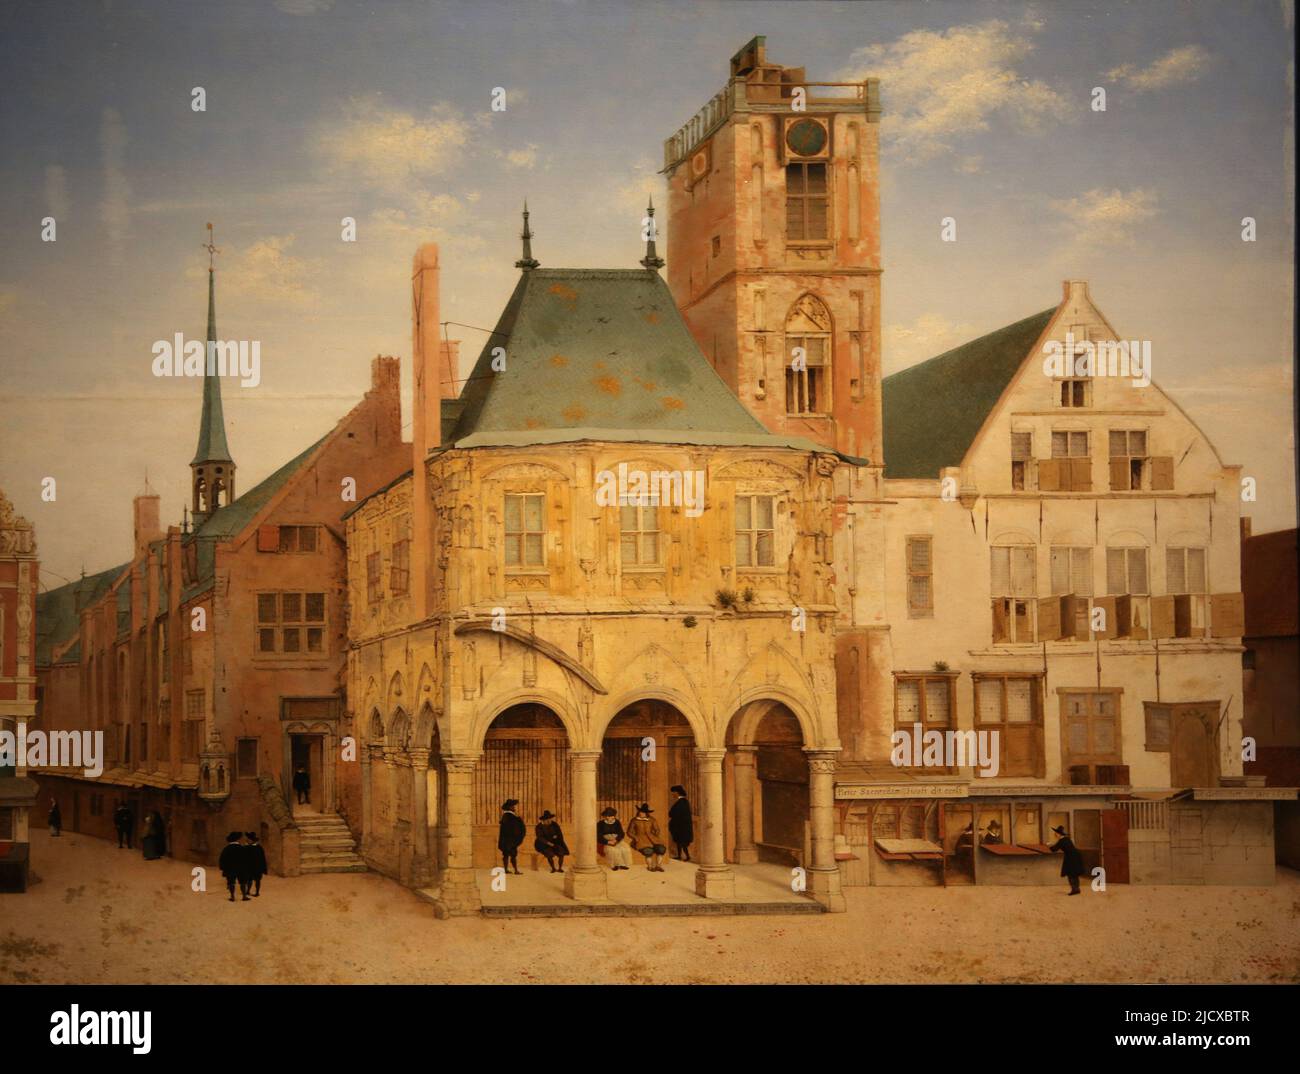 El antiguo ayuntamiento de Amsterdam, por Pieter Jansz Saenredam (1597-1665). Aceite en el panel, 1657. Rijksmuseum. Ámsterdam. Países Bajos. Foto de stock